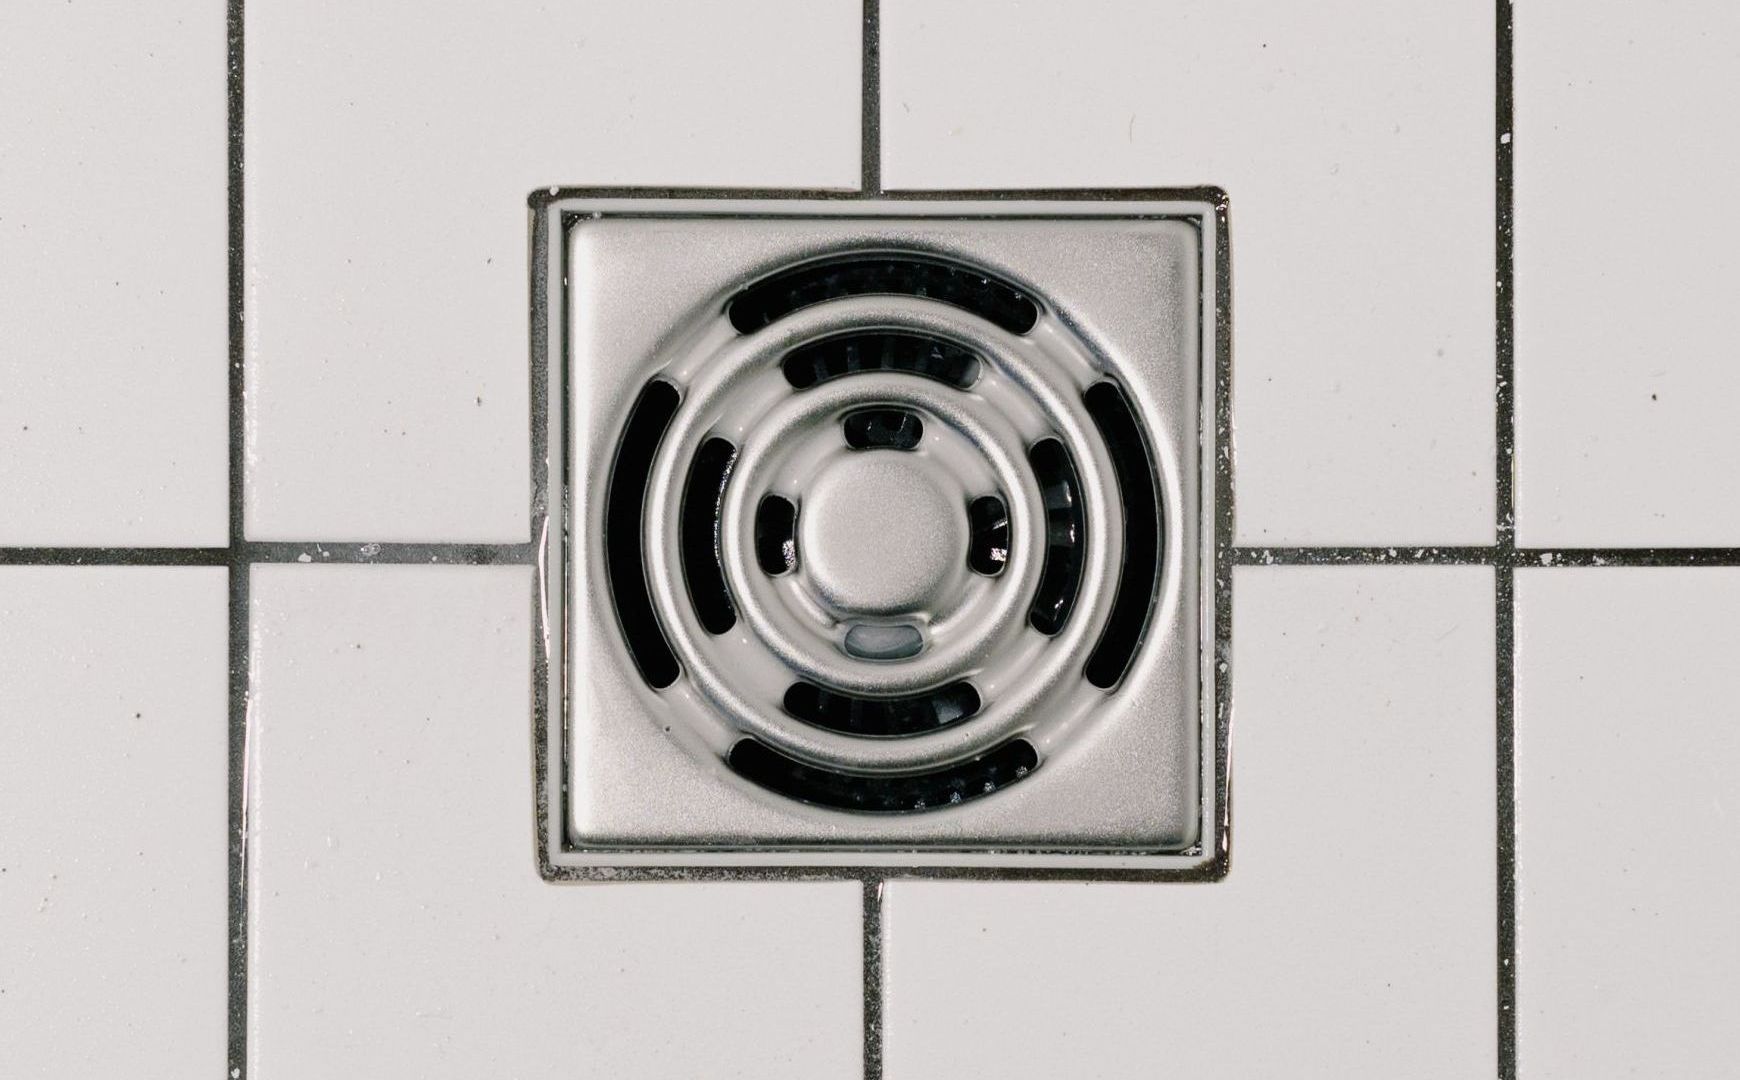 a drain on a tiled floor has a circular design on it